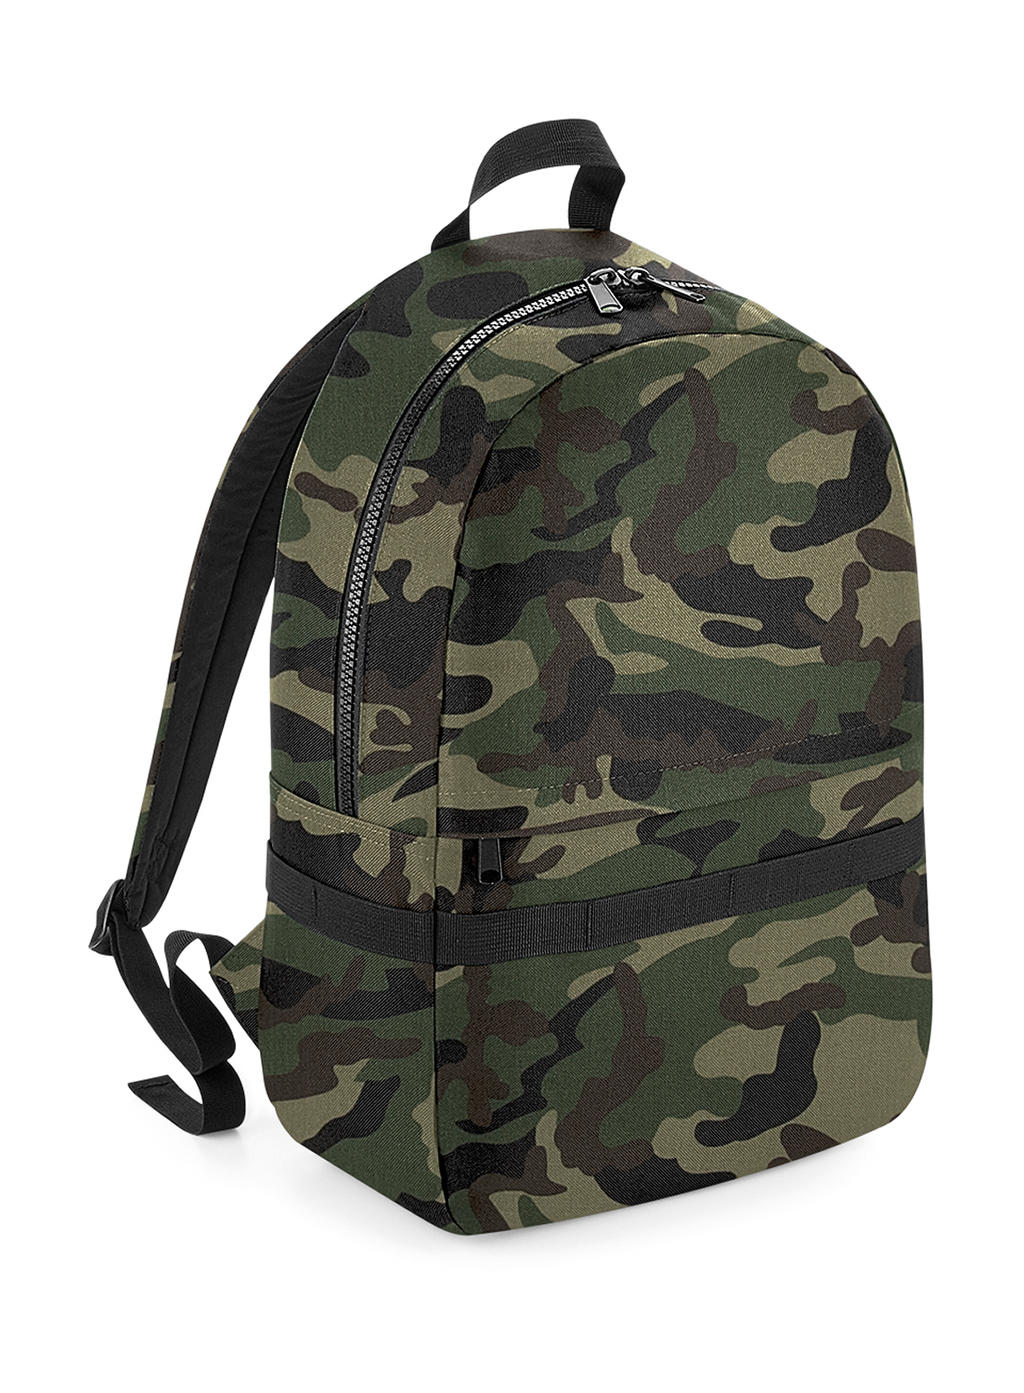  Modulr? 20 Litre Backpack in Farbe Jungle Camo